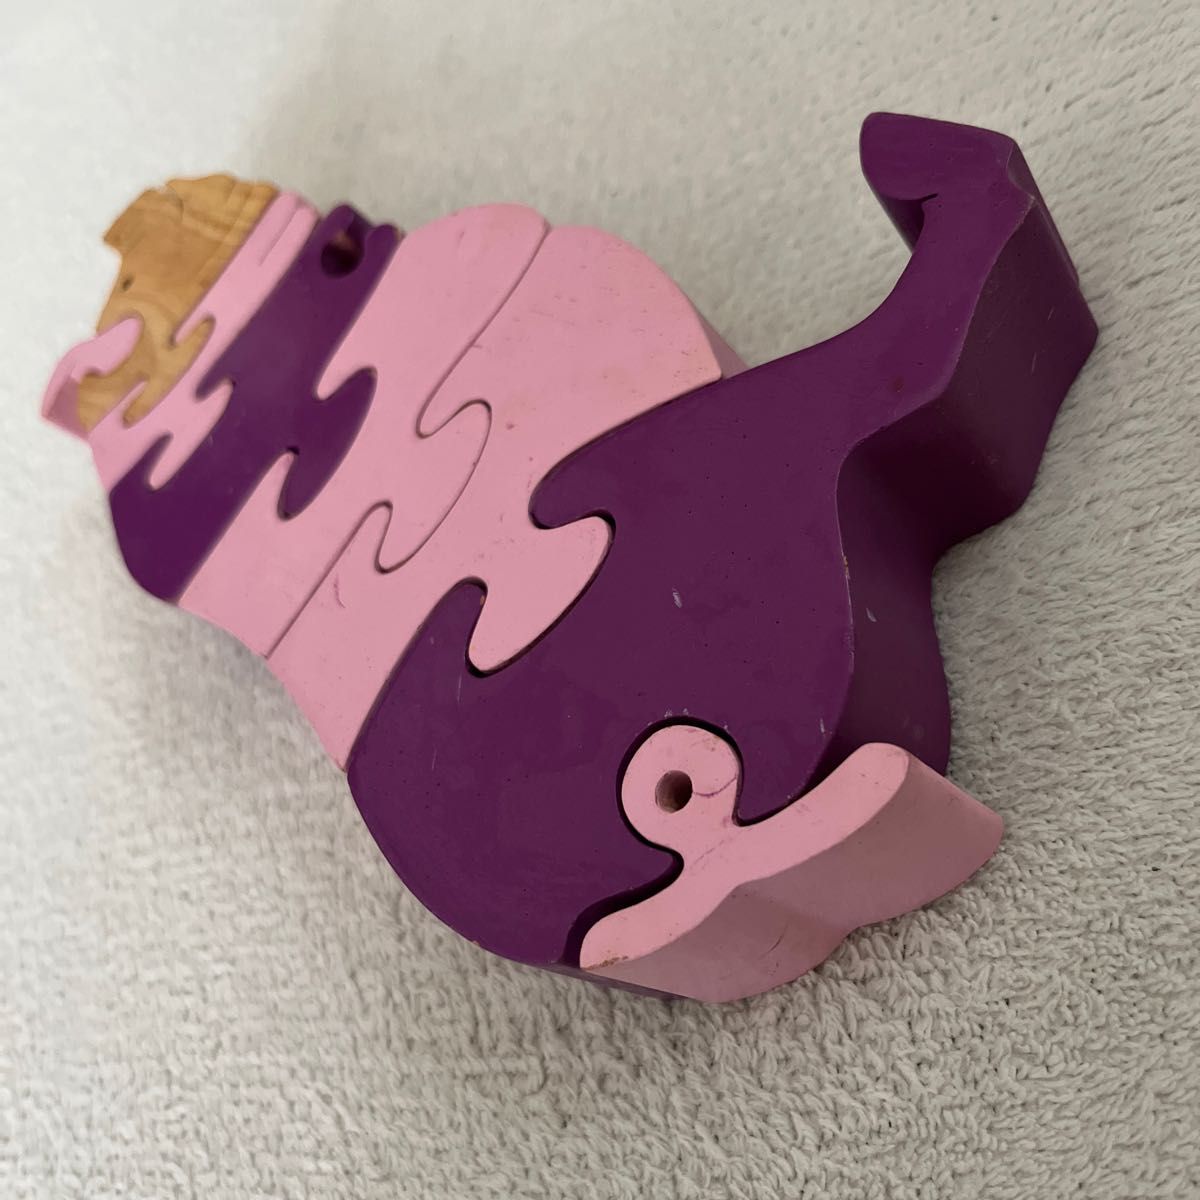 【知育玩具】おしゃれ 木製 積み木 パズル ぶた pig ピンク紫 北欧 木のおもちゃ  木製パズル